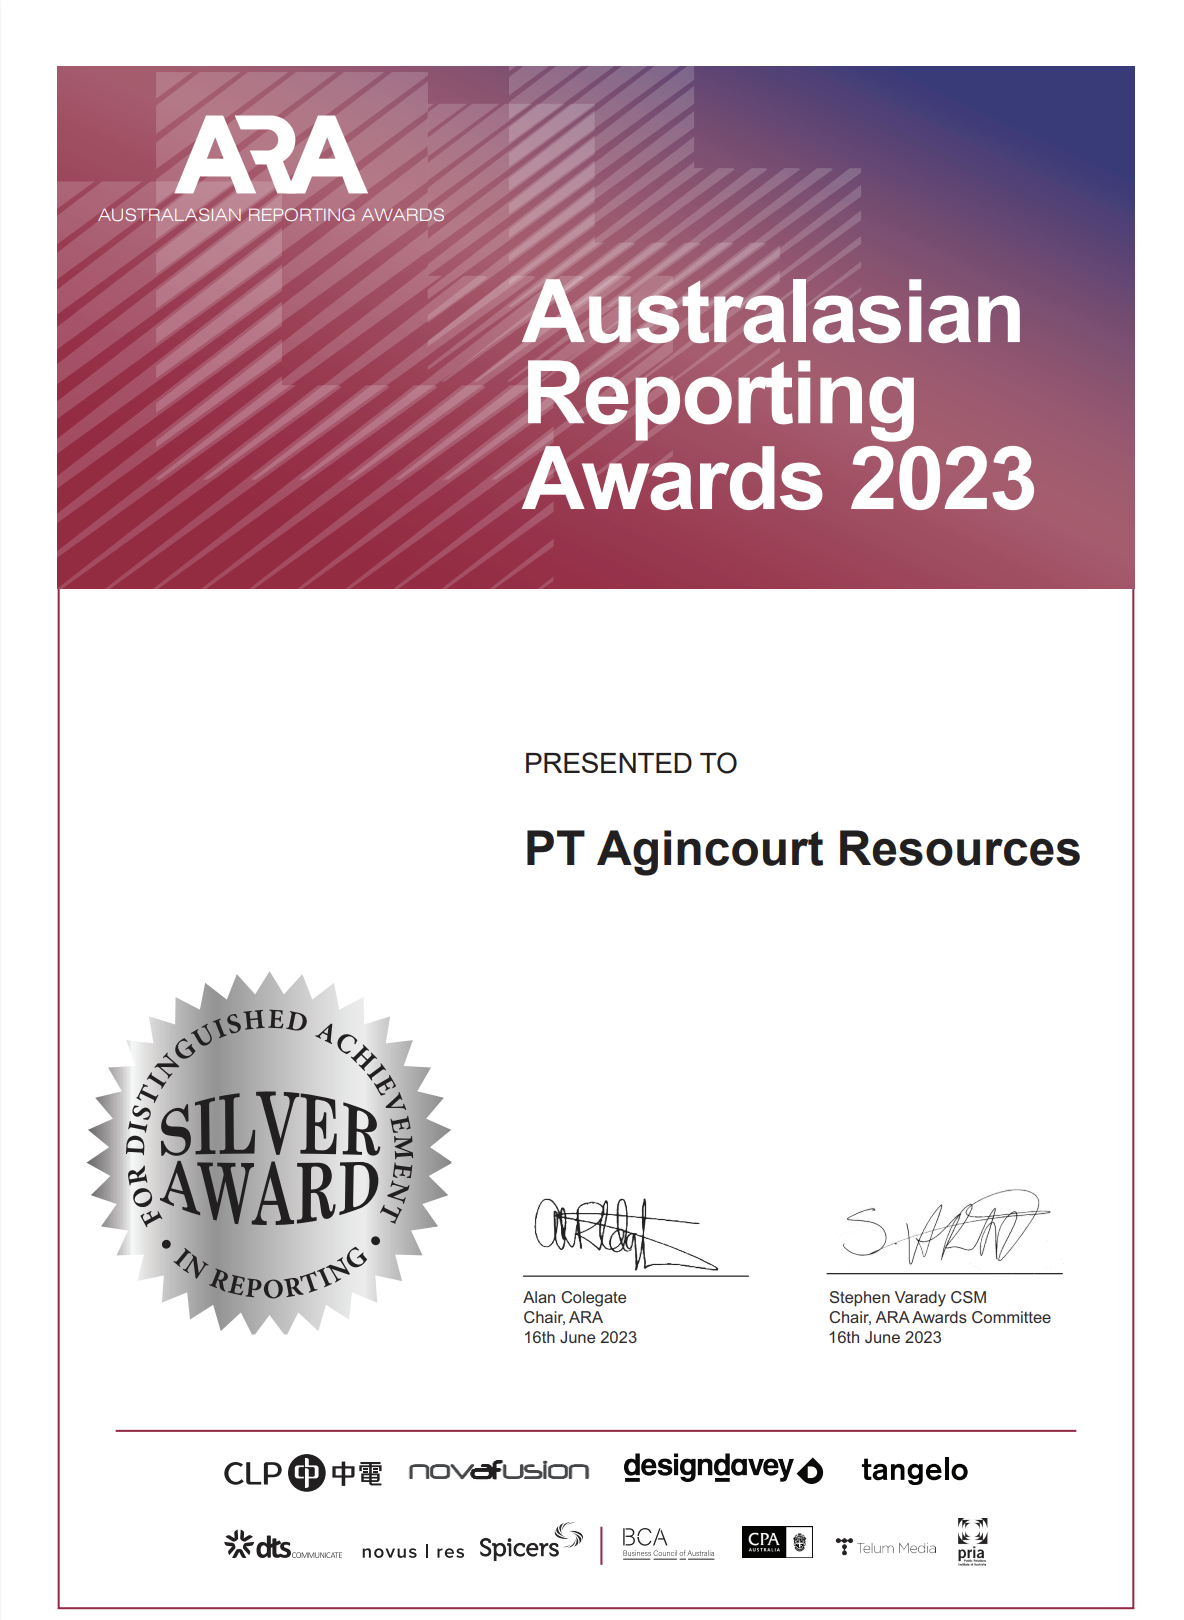 Australasian Reporting Awards (ARA) 2023